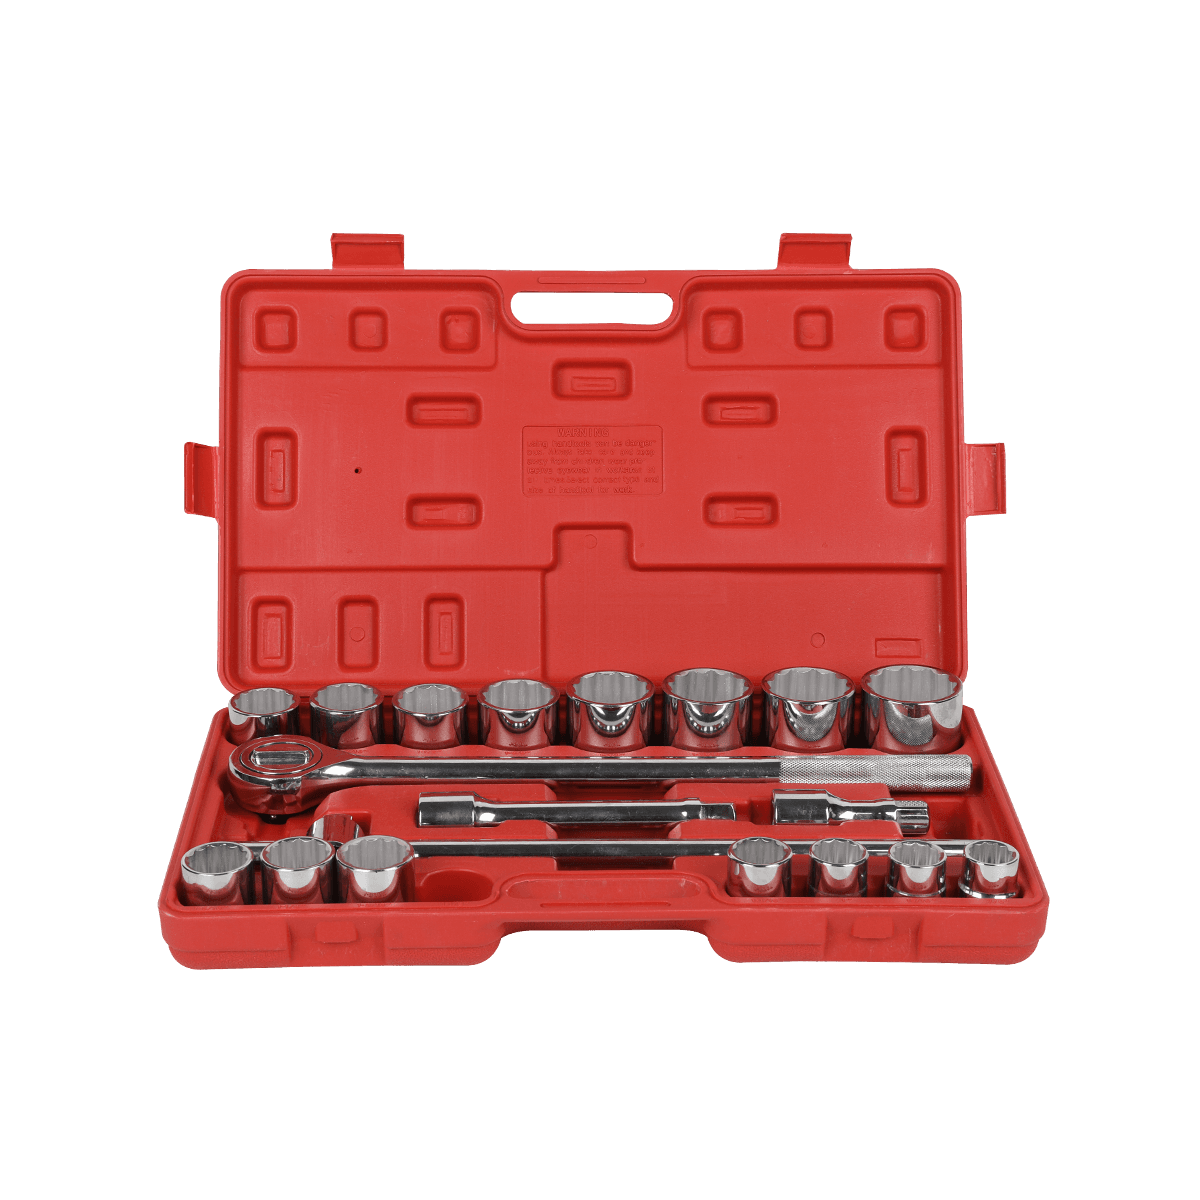 21-teiliger, robuster Hand-Automechanik-Schraubenschlüssel, 3/4-Zoll-Steckschlüsselsatz für die Reparatur von PKW und LKW, mit Schlagkoffer